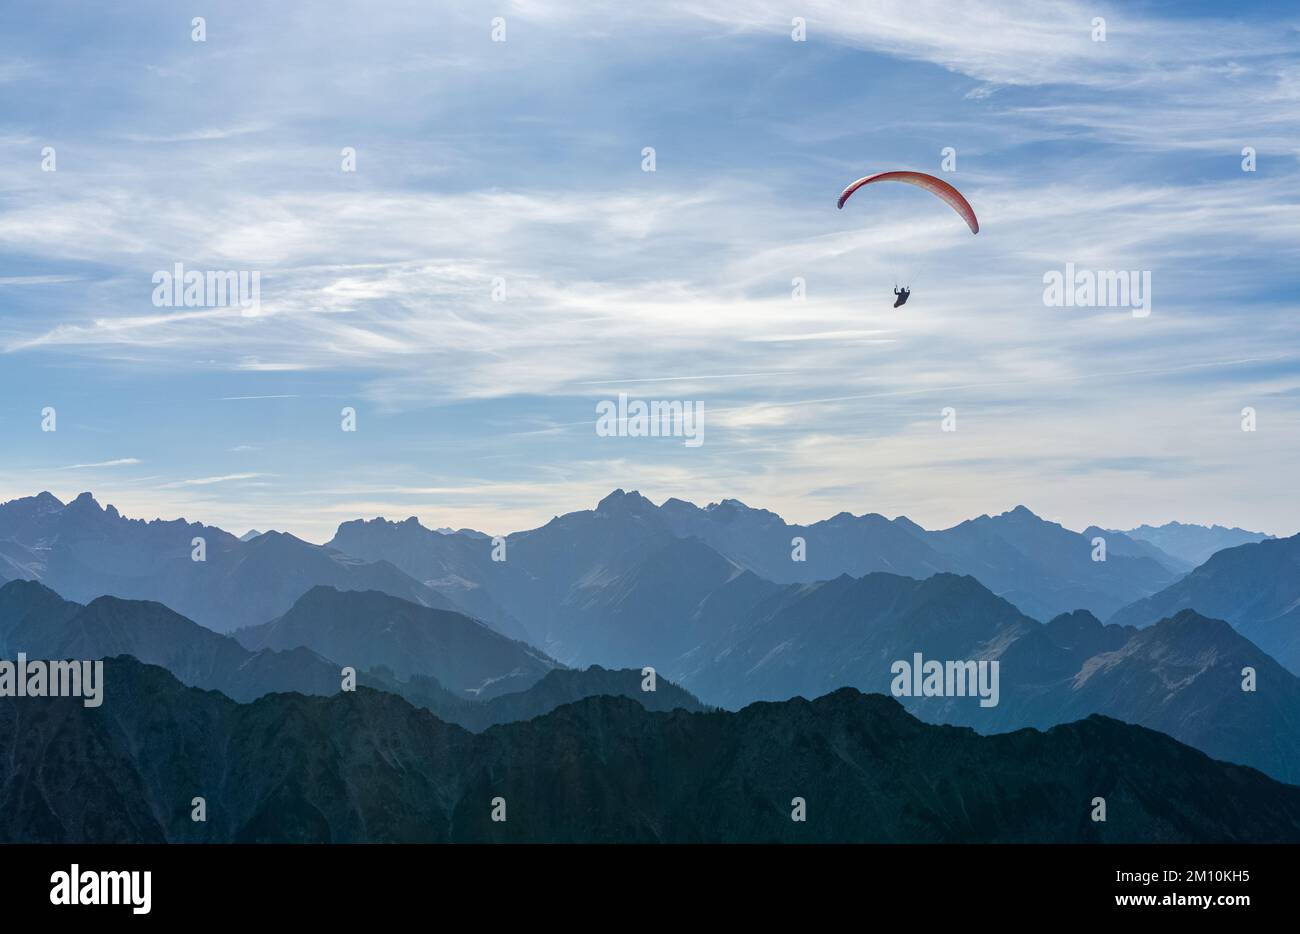 Gleitschirmfliegen über den blauen Bergen Silhouette, Allgaeu, Oberstdorf, Alpen, Deutschland. Reiseziel. Freiheit- und Urlaubskonzept. Stockfoto